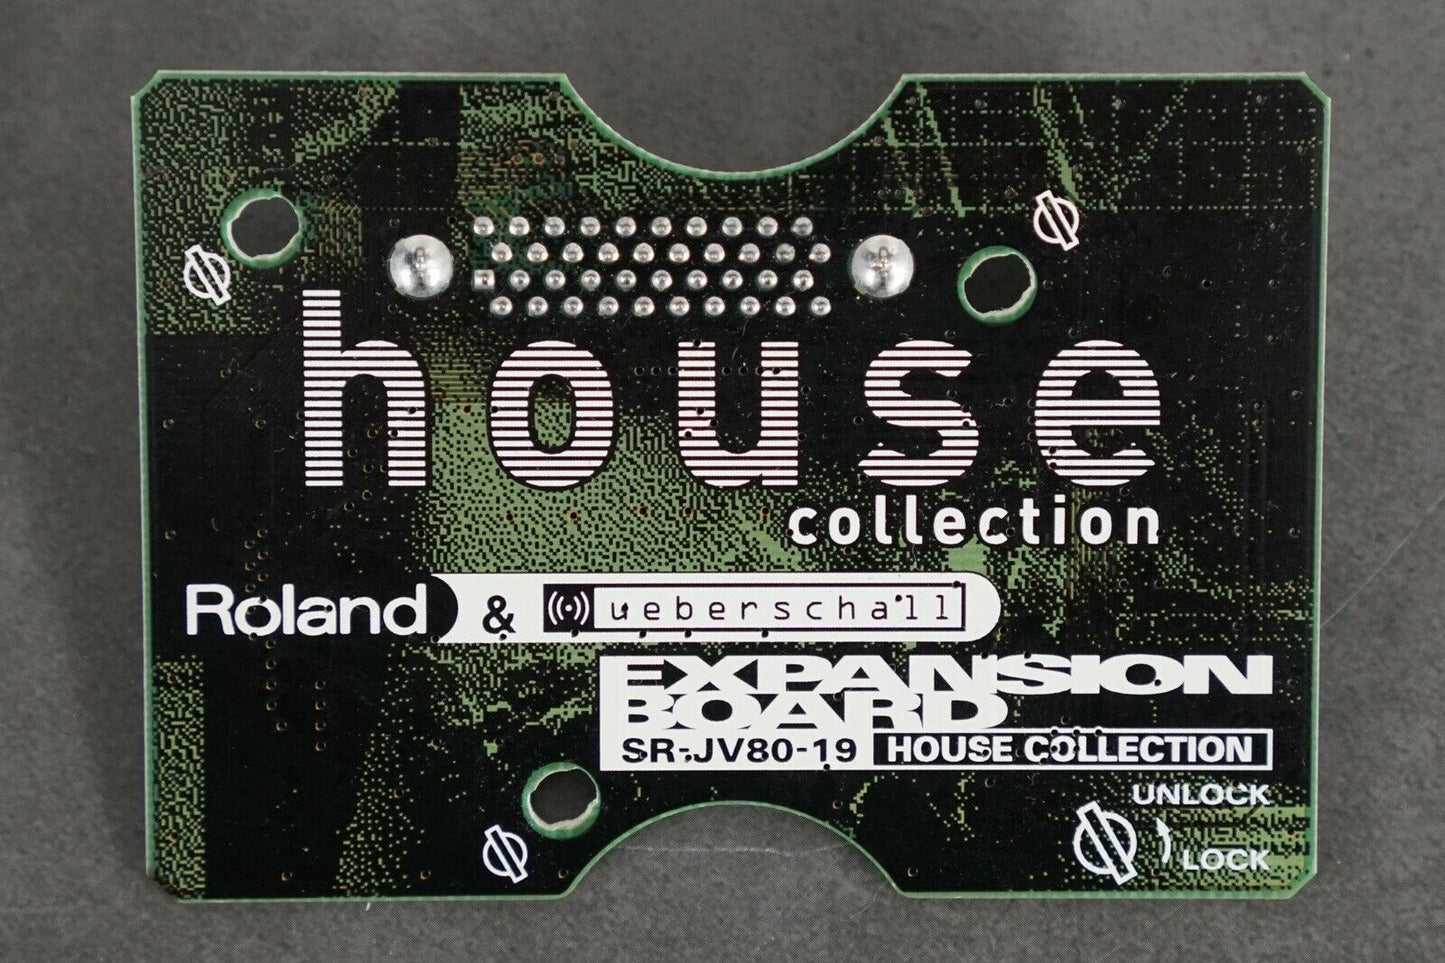 Placa de expansión de la colección House Roland SR-JV80-19